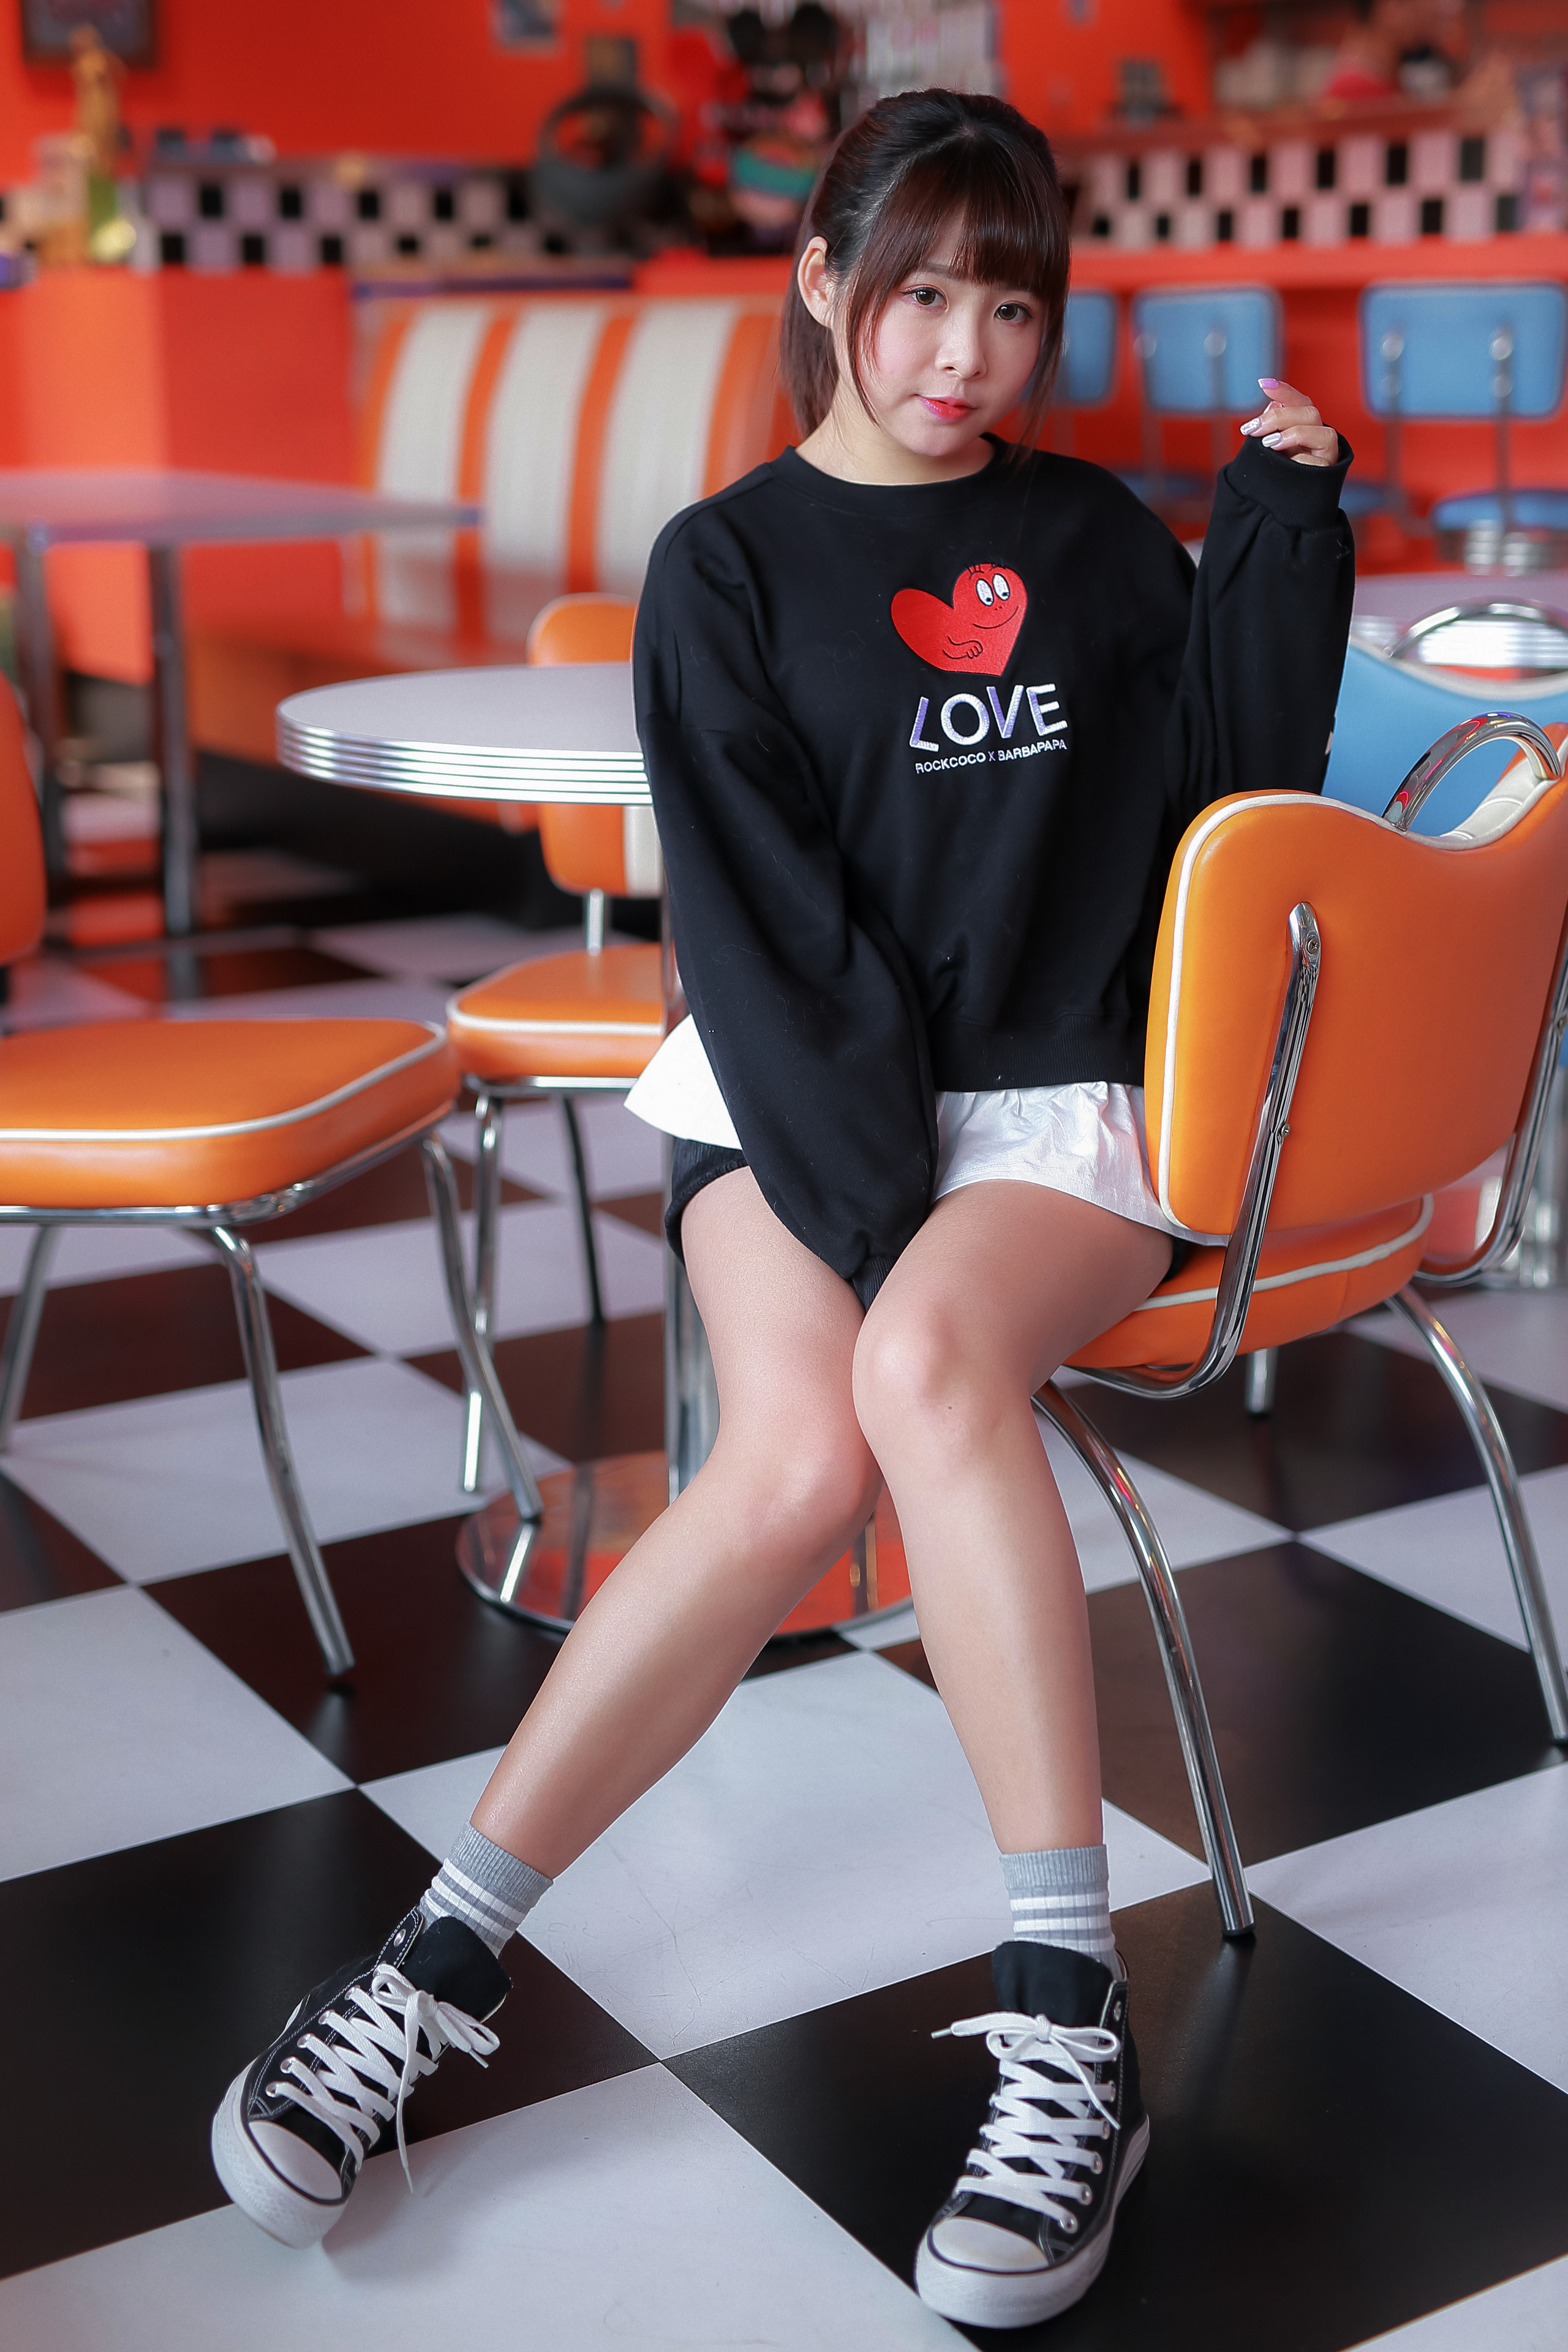 Asian Model Women Long Hair Brunette Diner Chair Table Bench Sneakers Pullover Short Socks White Shi 2560x3840